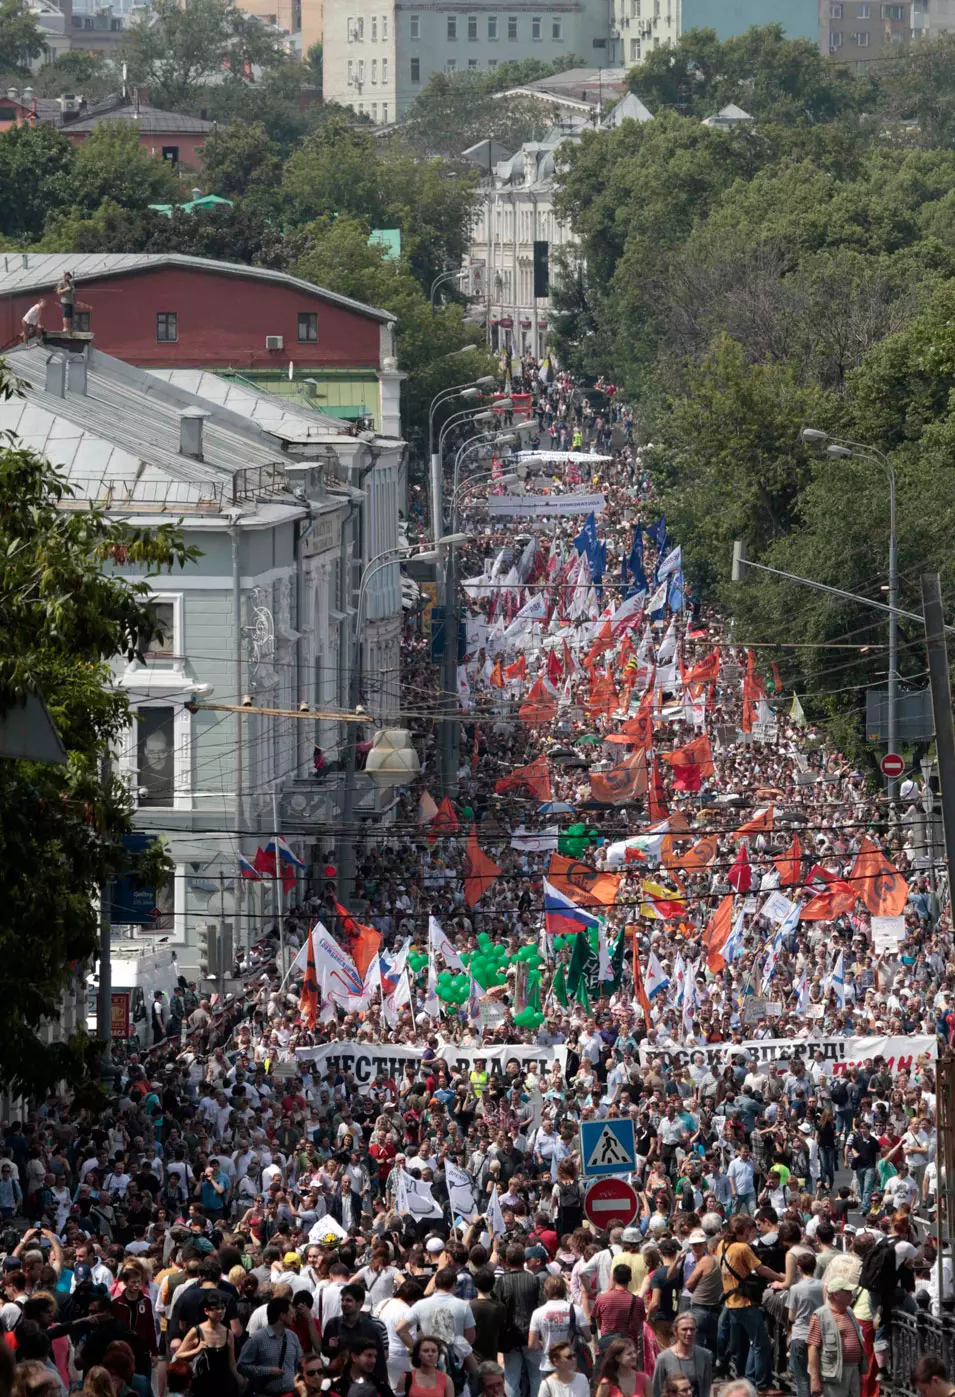 המארגנים העריכו כי להפגנה הגיעו כ-60-70 אלף איש. מוסקבה, היום